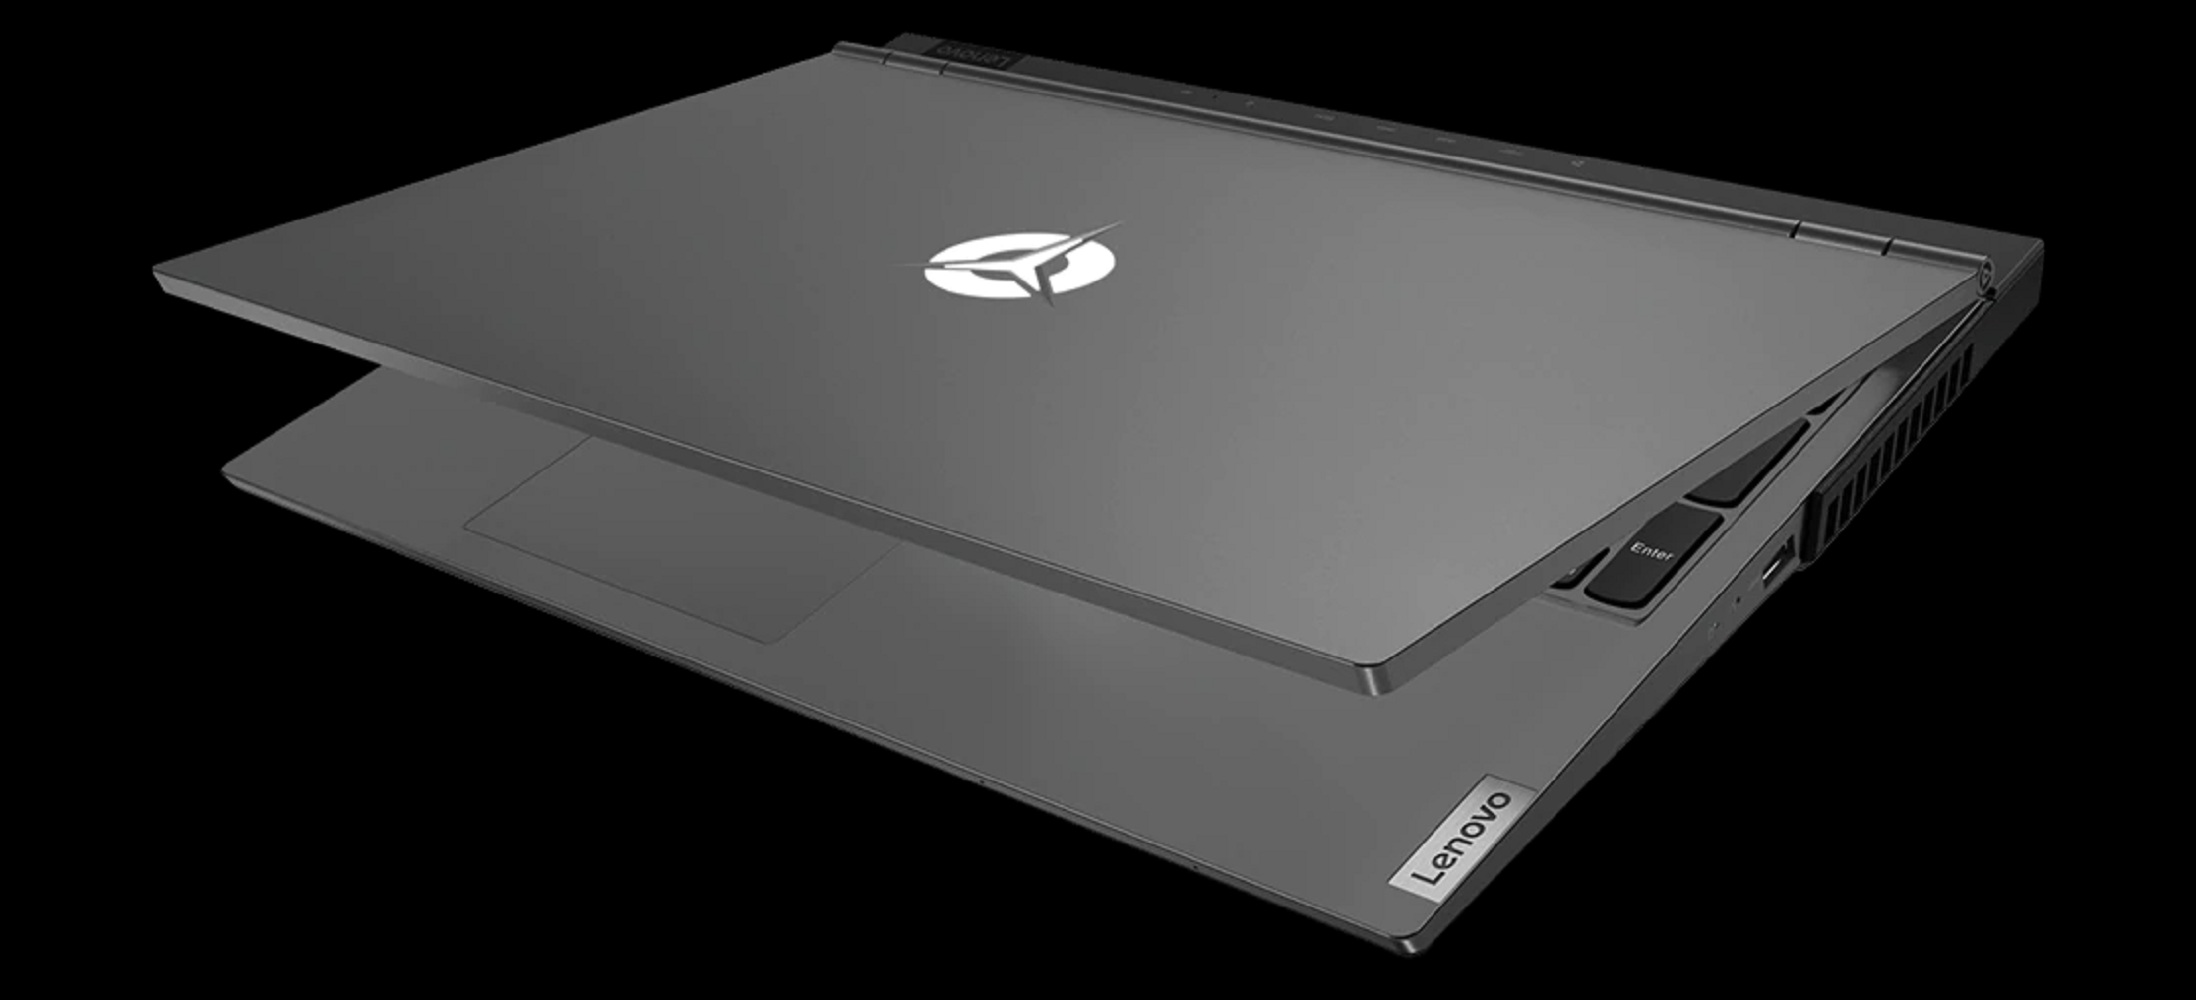 Lenovo Meluncurkan 3 Laptop Gaming Baru - Pelajari Harga dan Spesifikasinya Disini